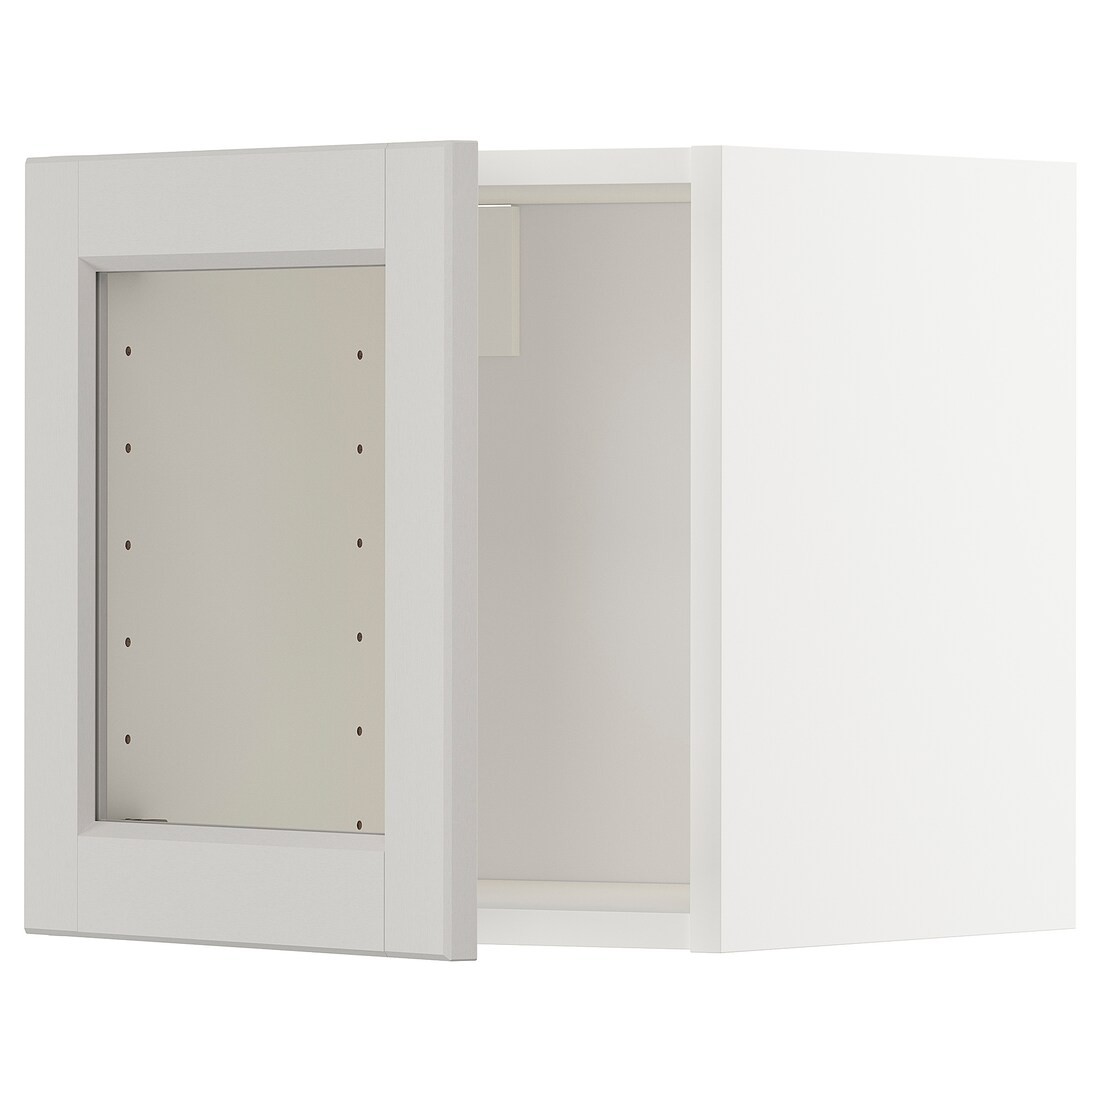 METOD МЕТОД Навесной шкаф со стеклянной дверью, белый / Lerhyttan светло-серый, 40x40 см